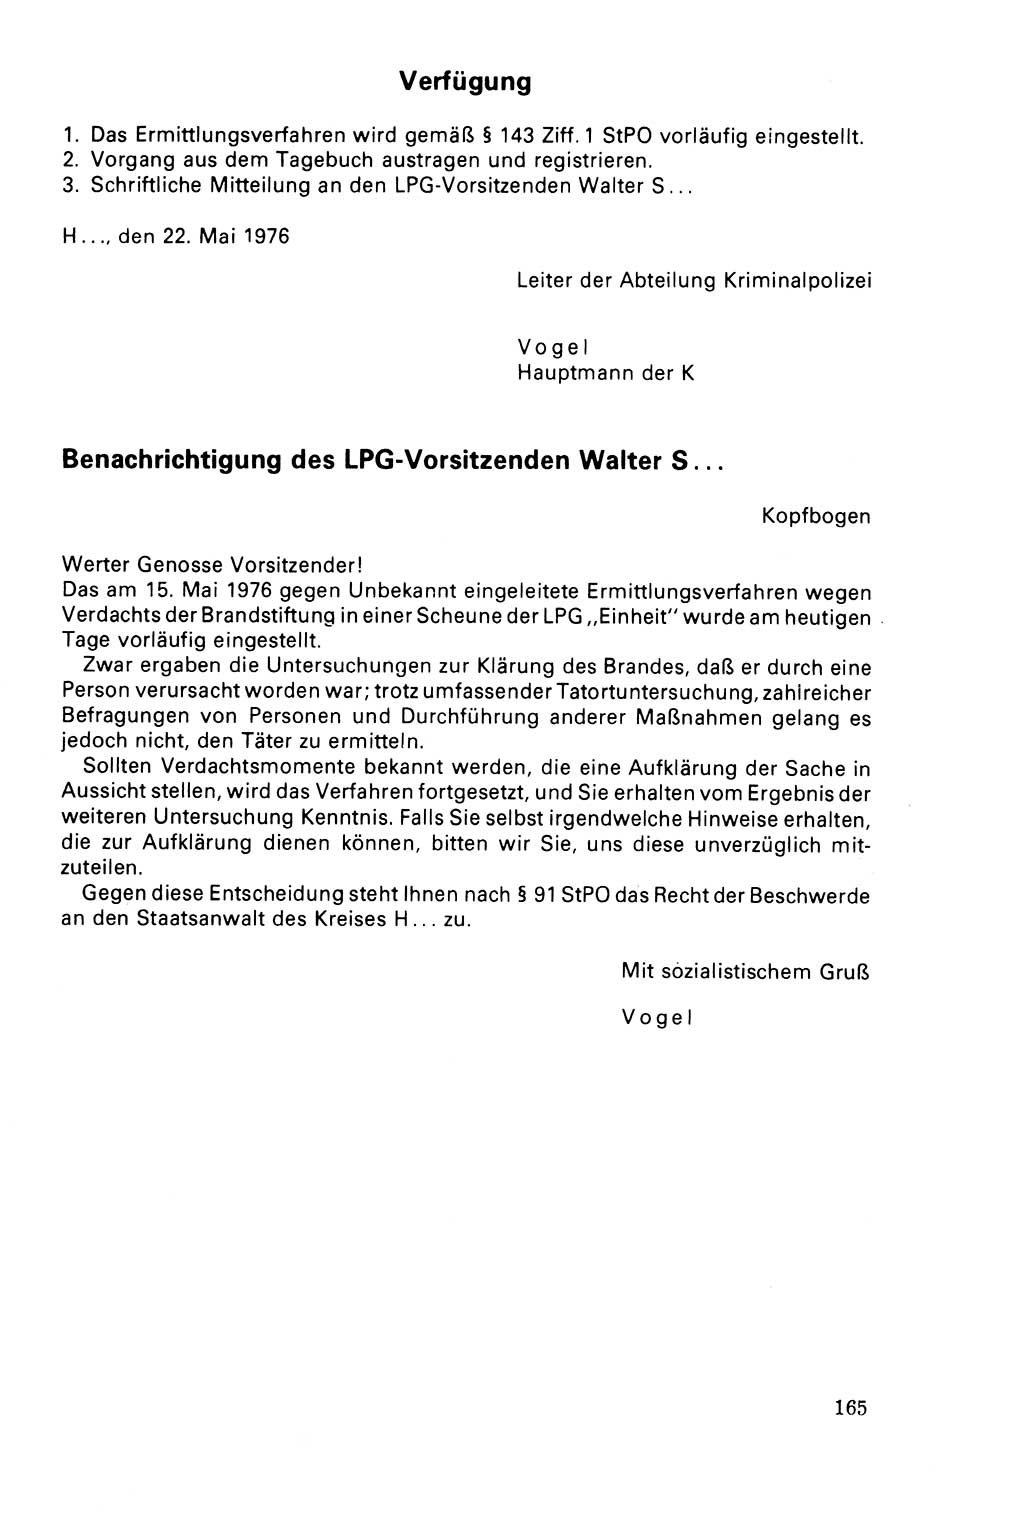 Der Abschluß des Ermittlungsverfahrens [Deutsche Demokratische Republik (DDR)] 1978, Seite 165 (Abschl. EV DDR 1978, S. 165)